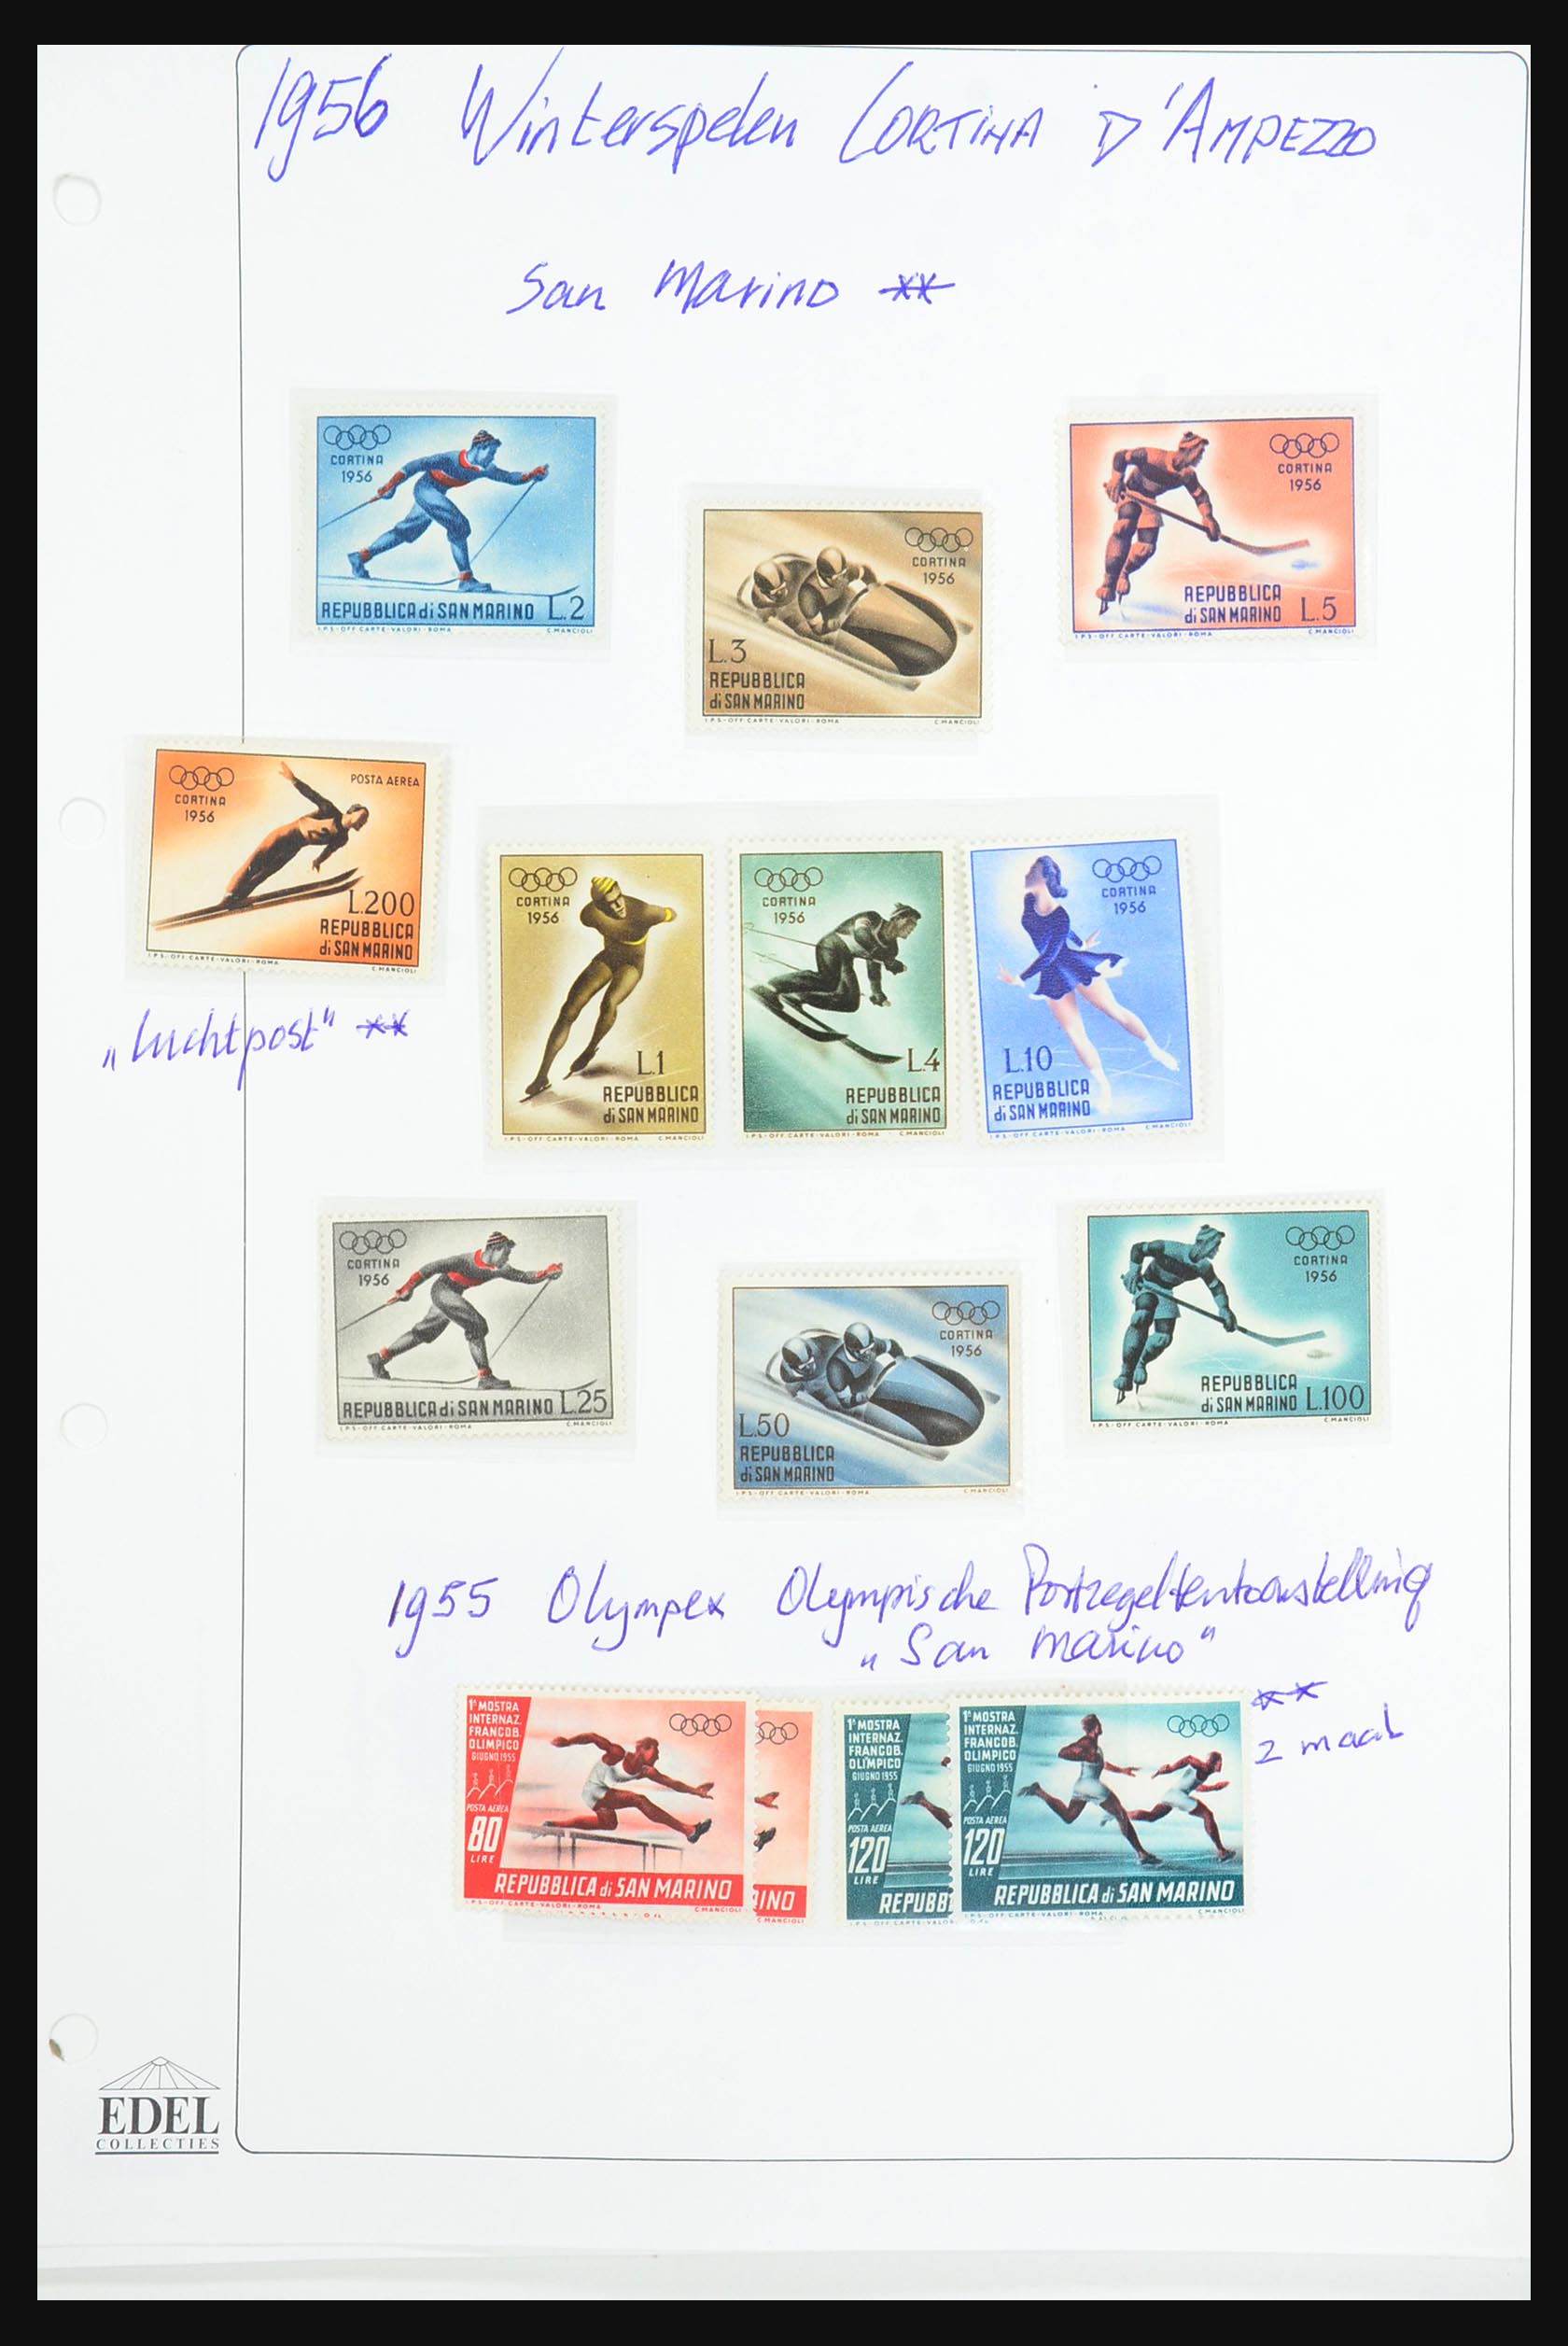 31518 0048 - 31518 Olympische Spelen 1896-1996.